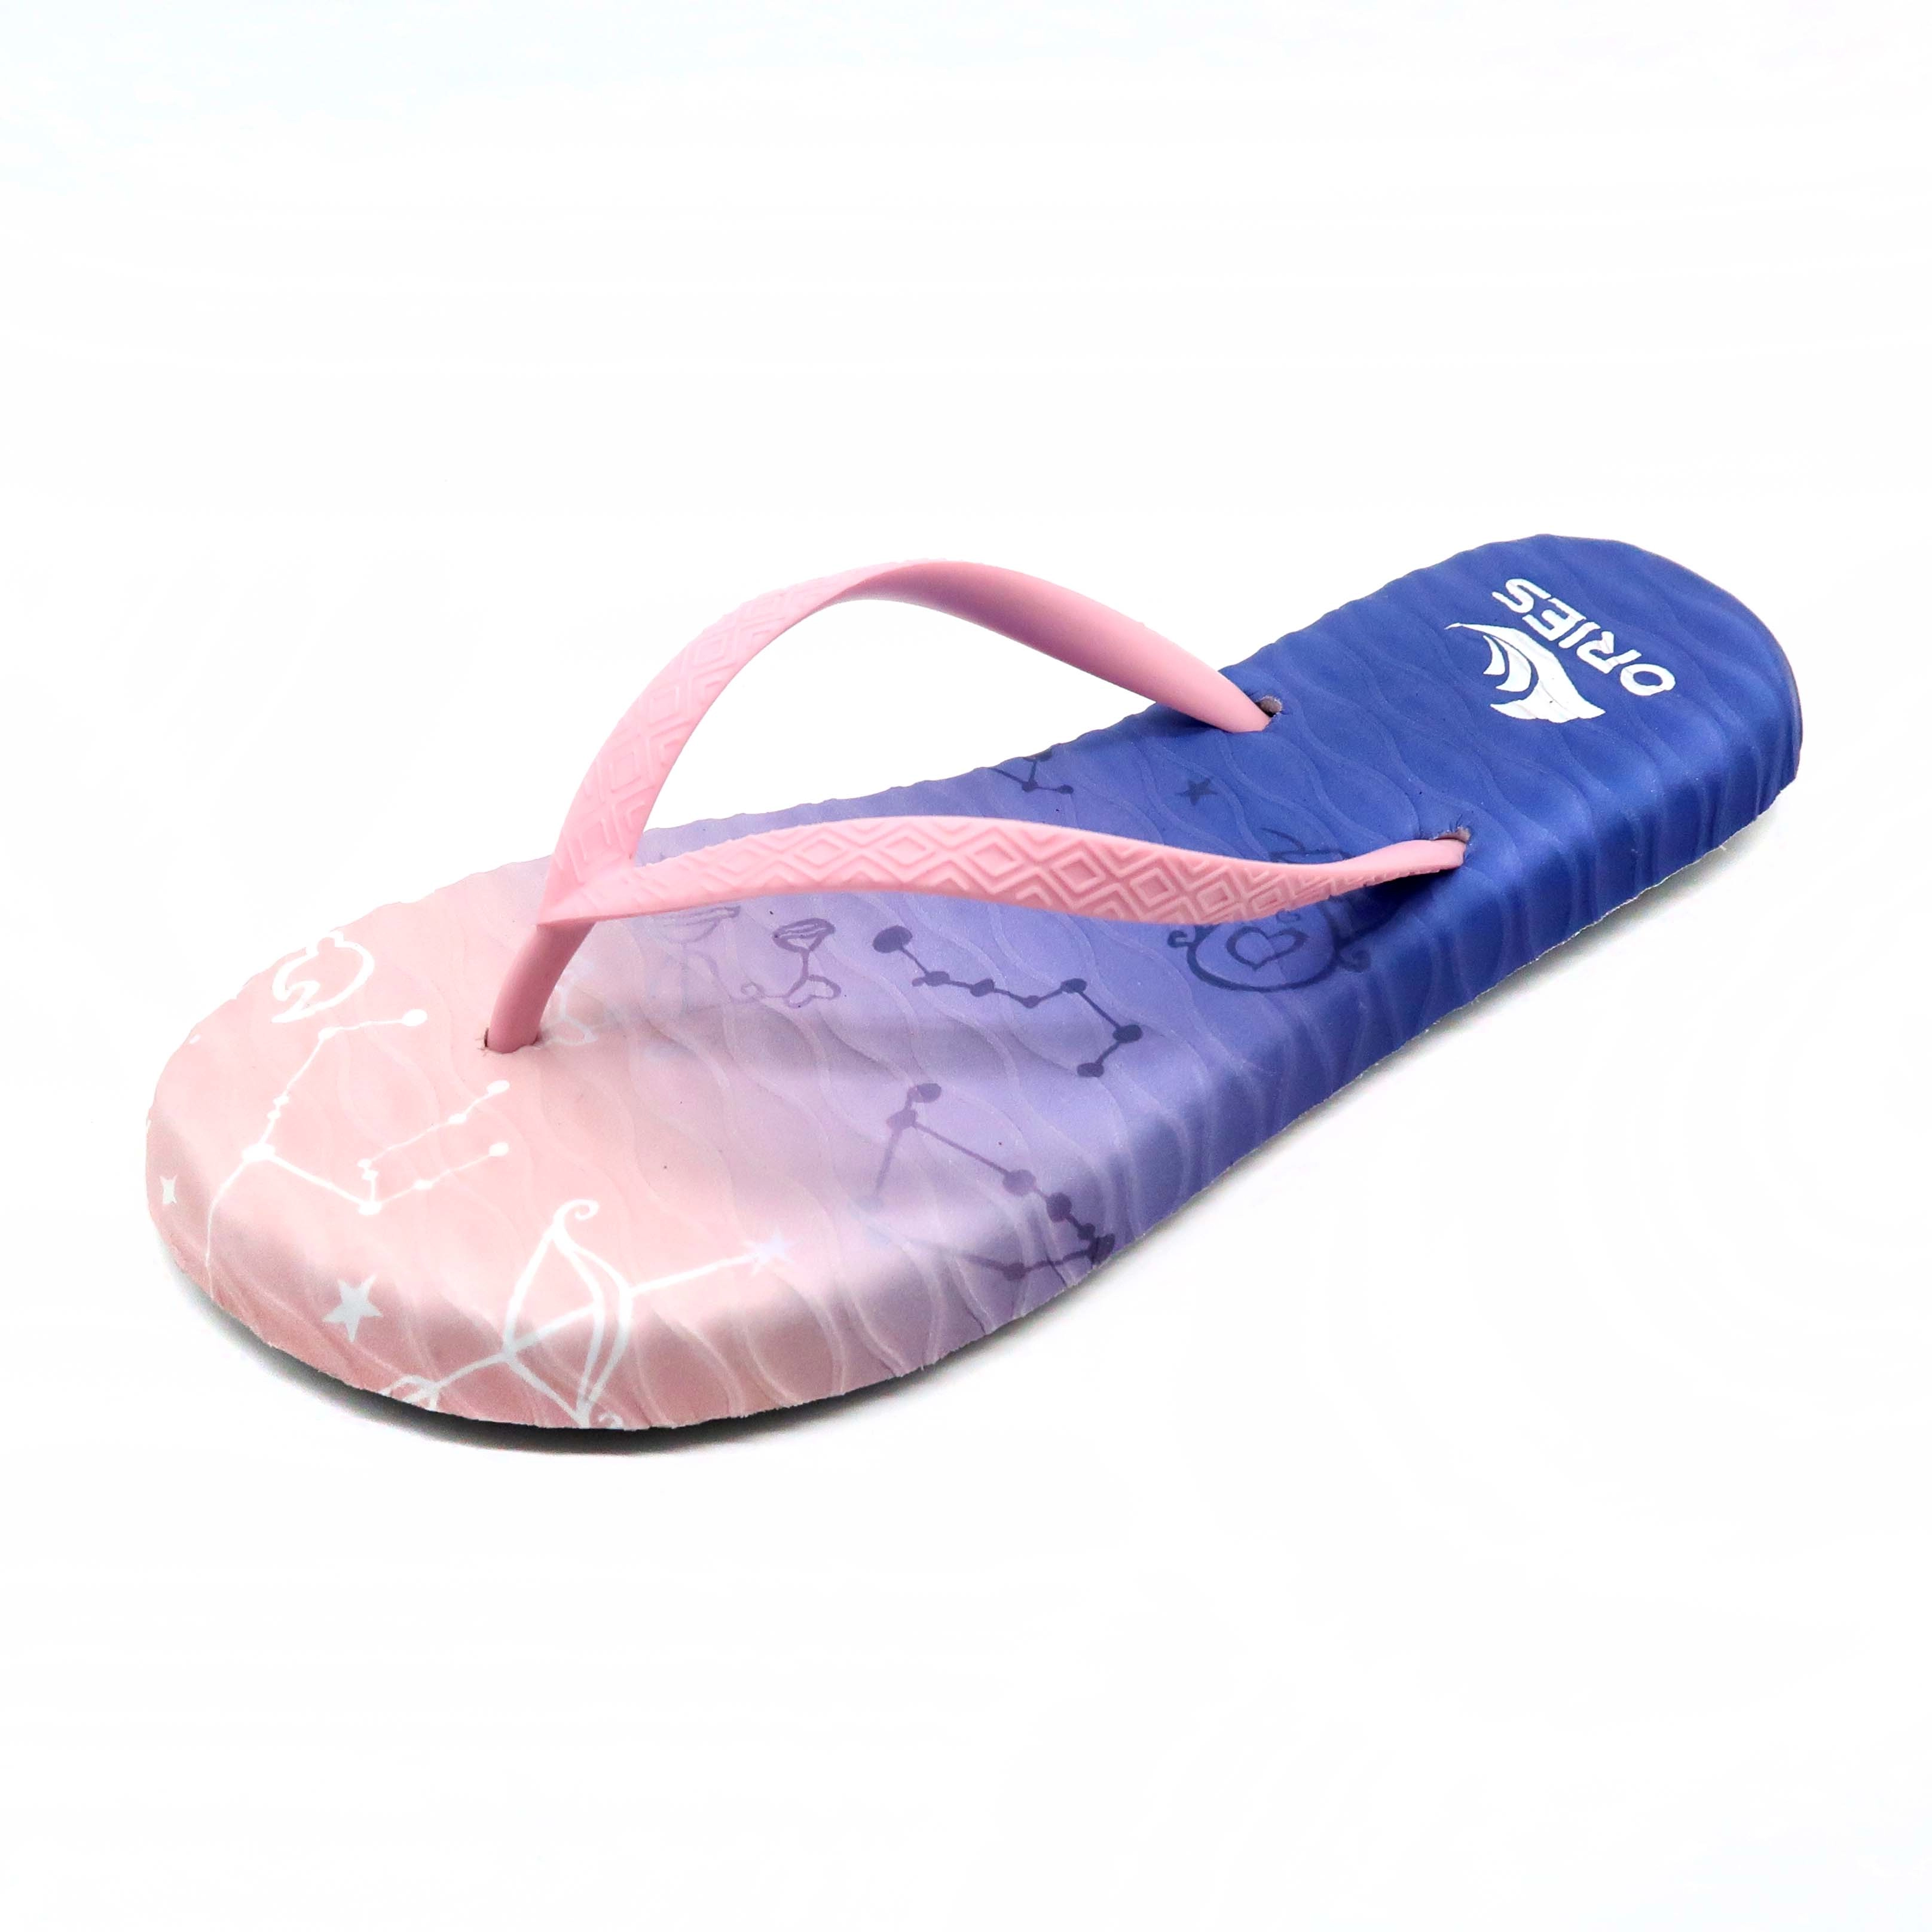 Sandalo infradito da ragazza all'aperto con costellazione di stampa digitale UV